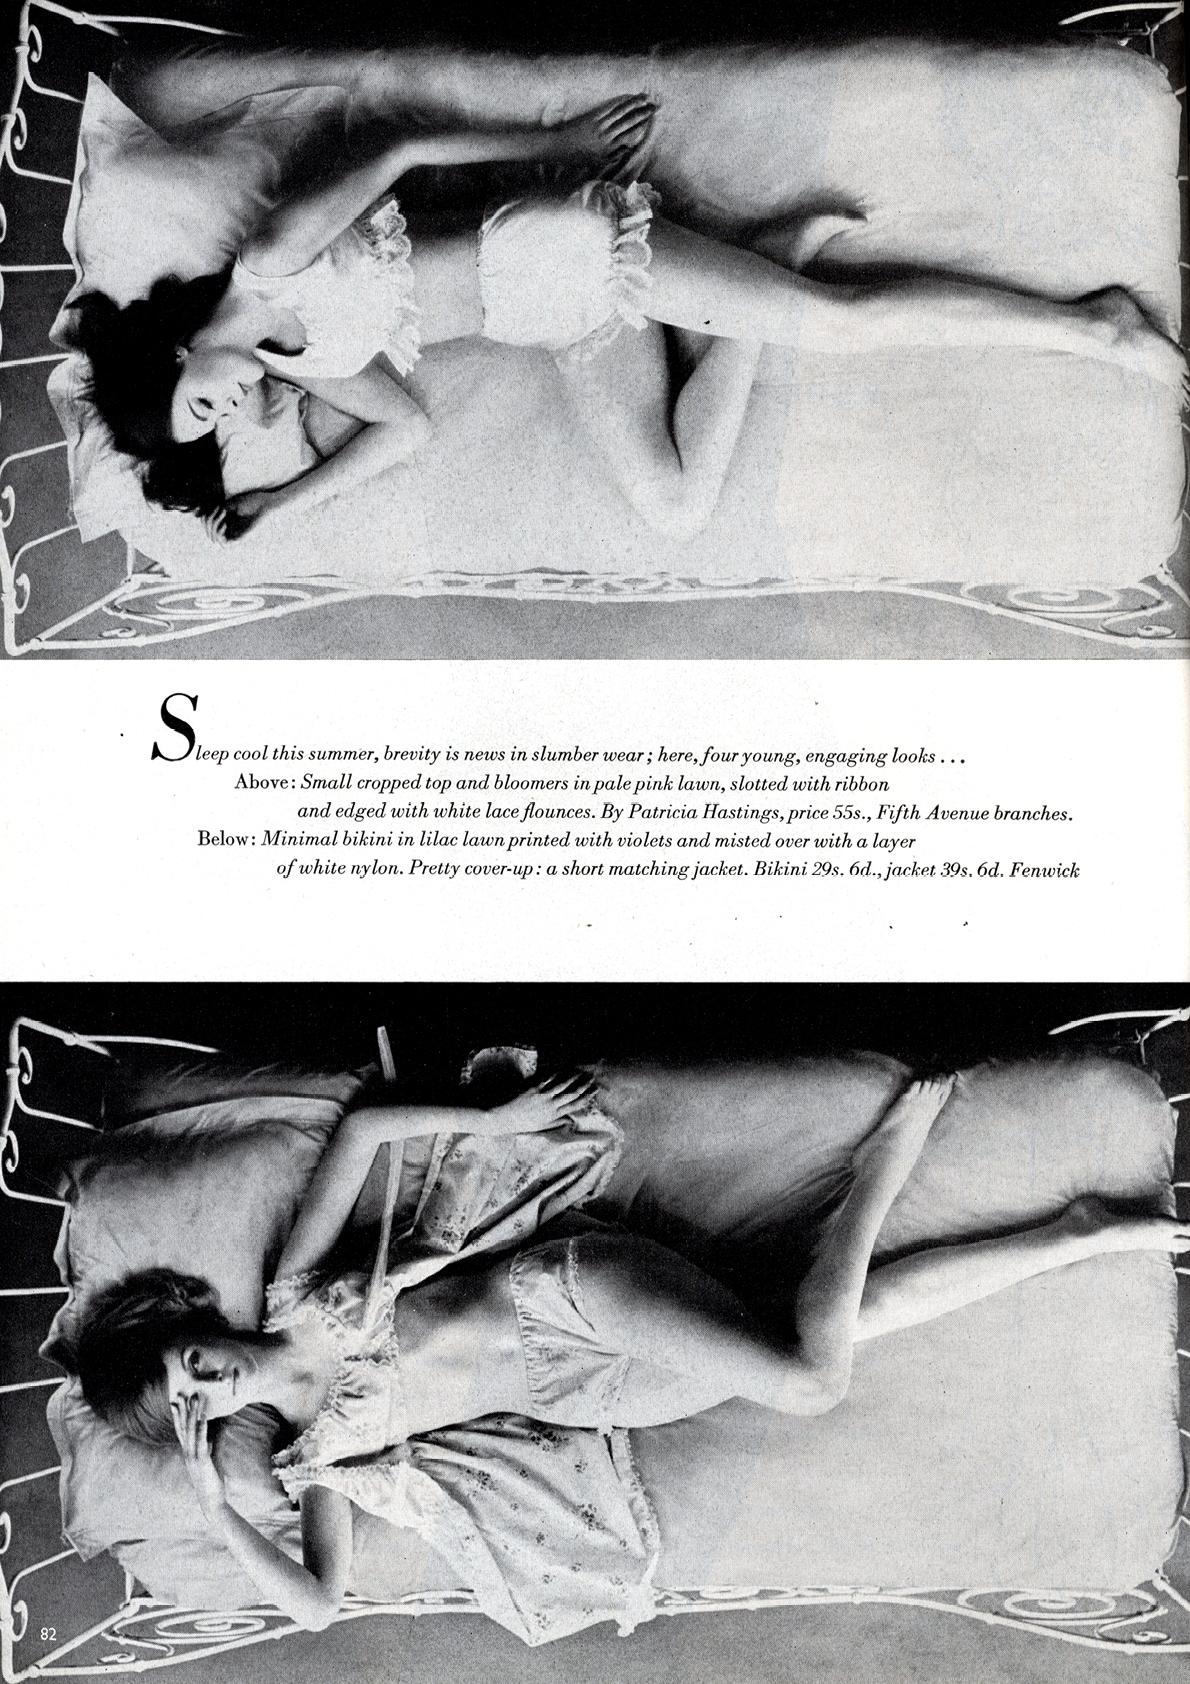 Vogue Magazine - Juni 1960 Sommerliche Vergnügungen, heimliche Schönheiten. Der Zustand ist sehr gut

Die erste Ausgabe mit dem Titel 